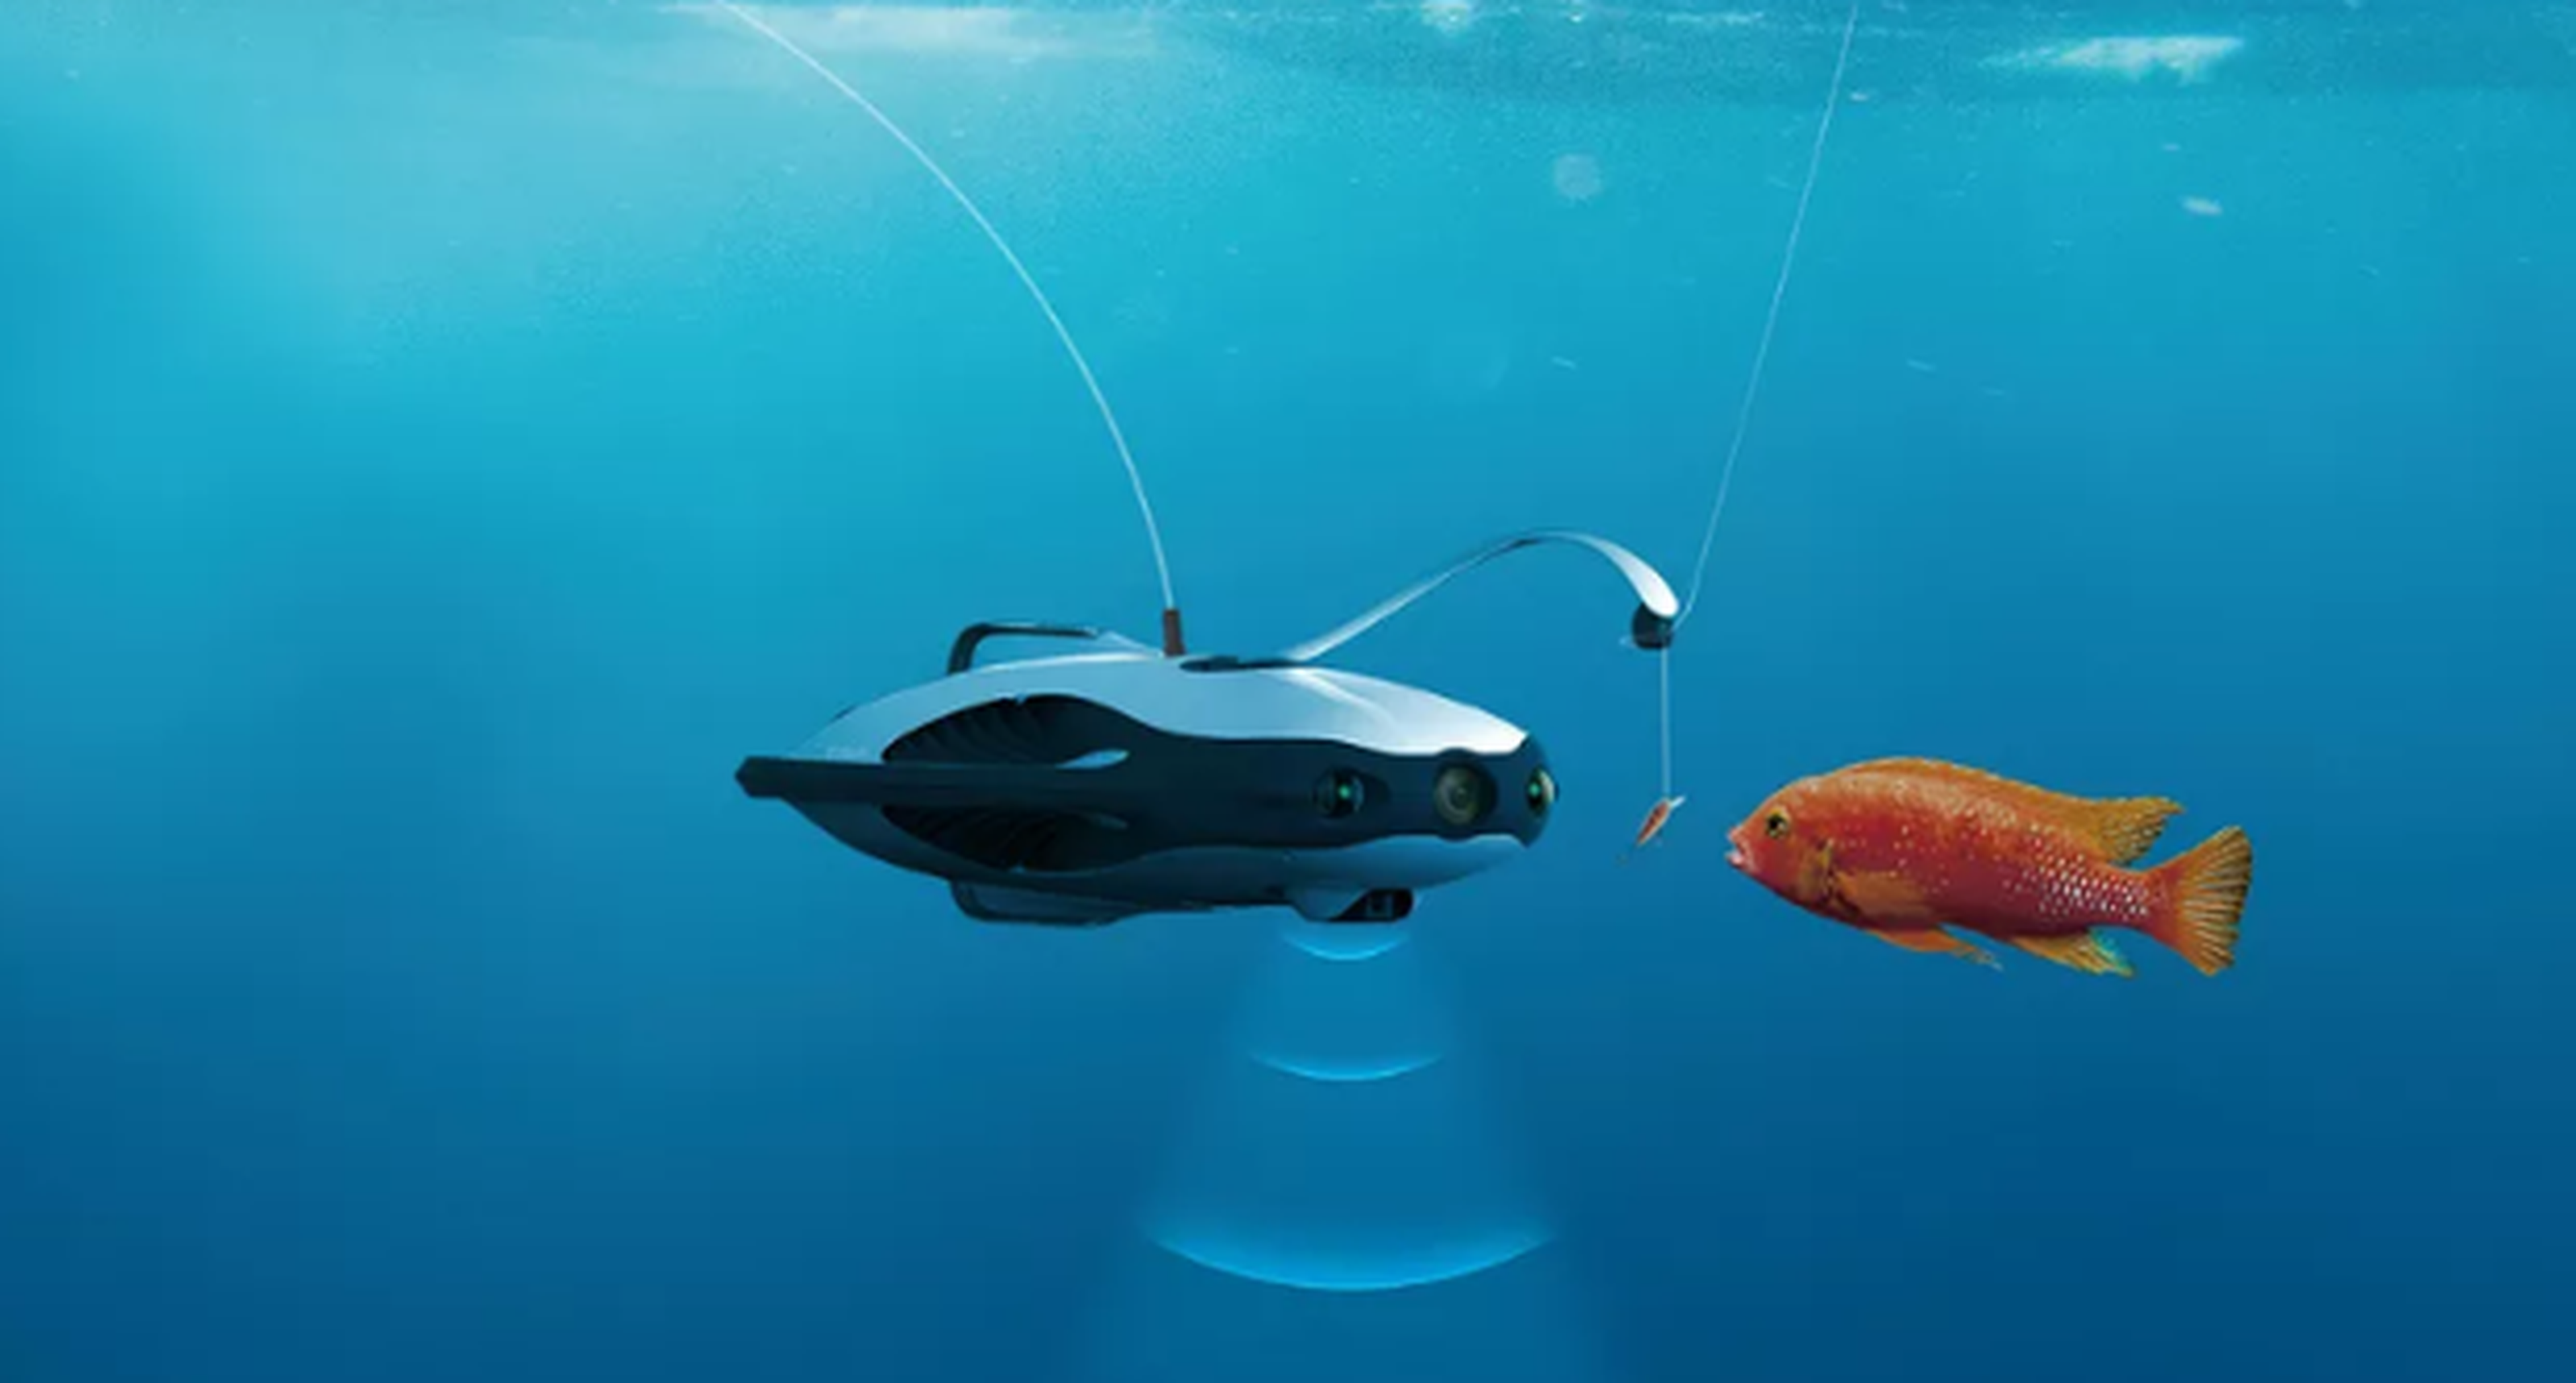 Pescadores, así es el dron submarino con el que soñáis